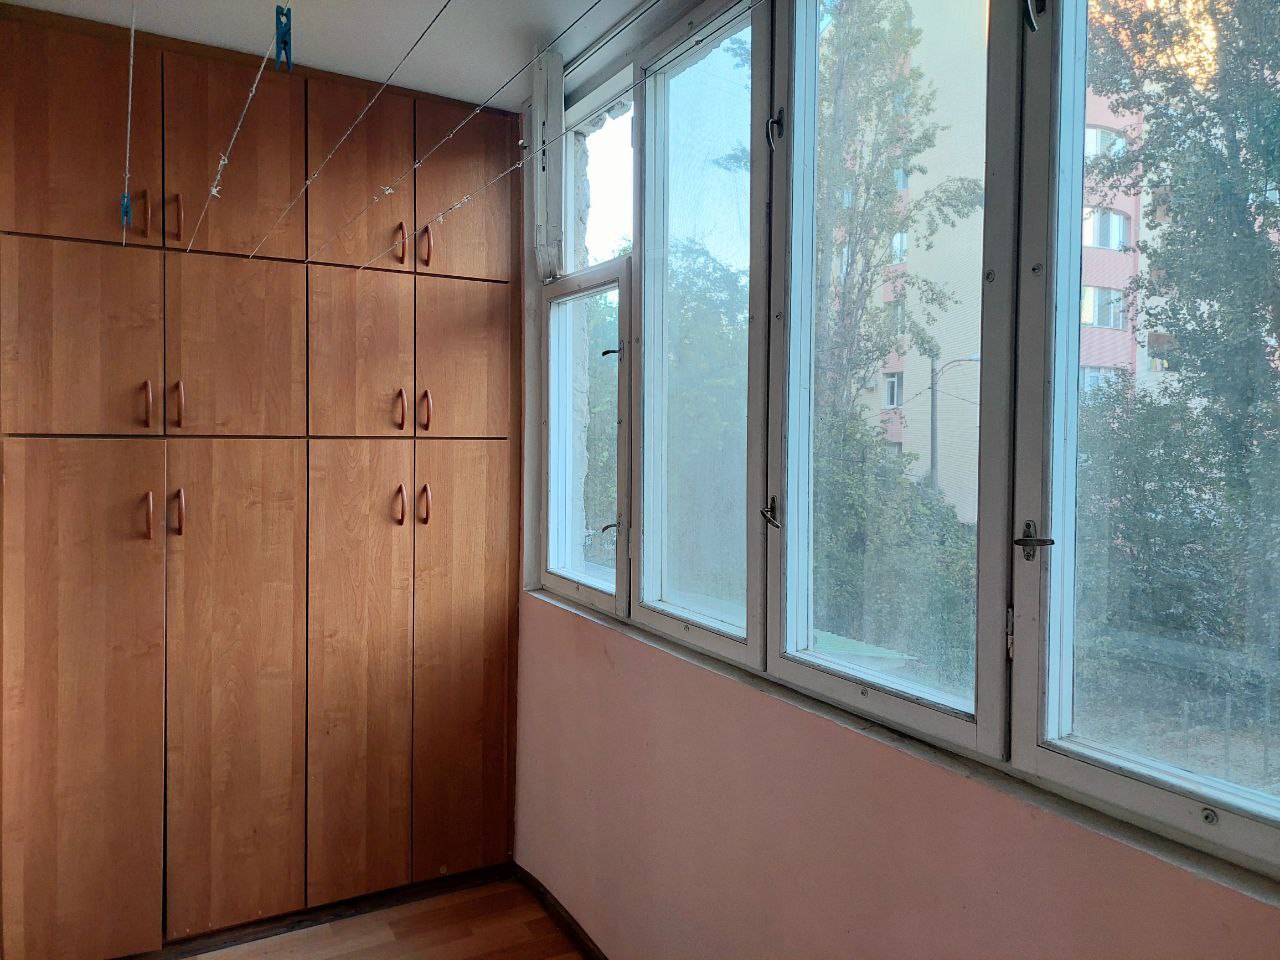 VÂNDUT Apartament de vânzare, Chișinău, sec. Ciocana, seria 143, 2 odăi, 55m2, et.2